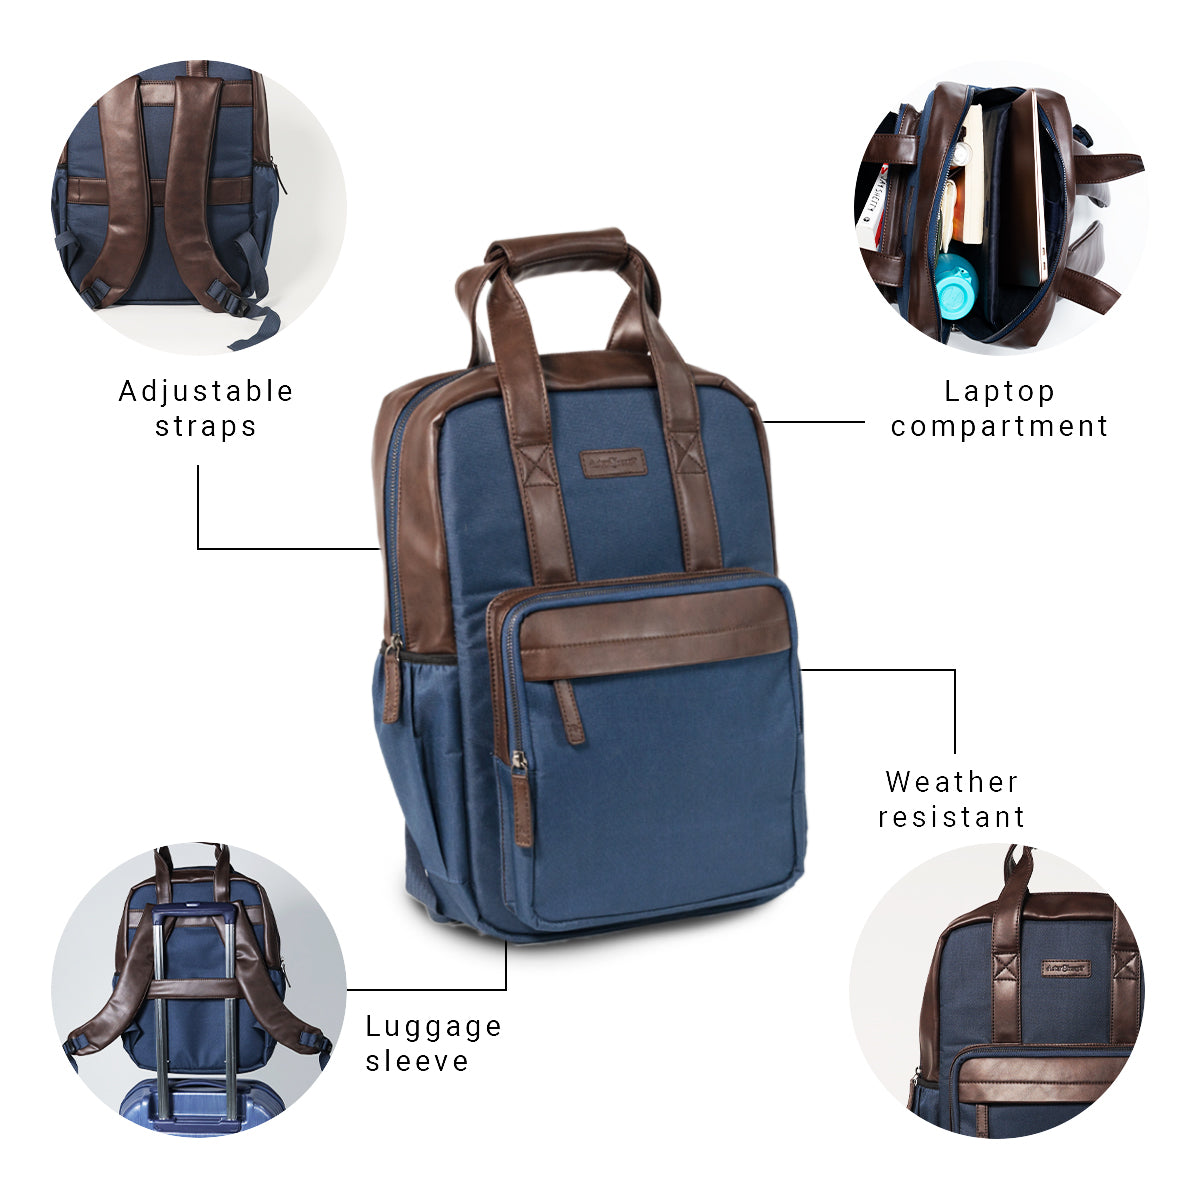 Navy Blue Chocolate Brown Backpack Rucksack